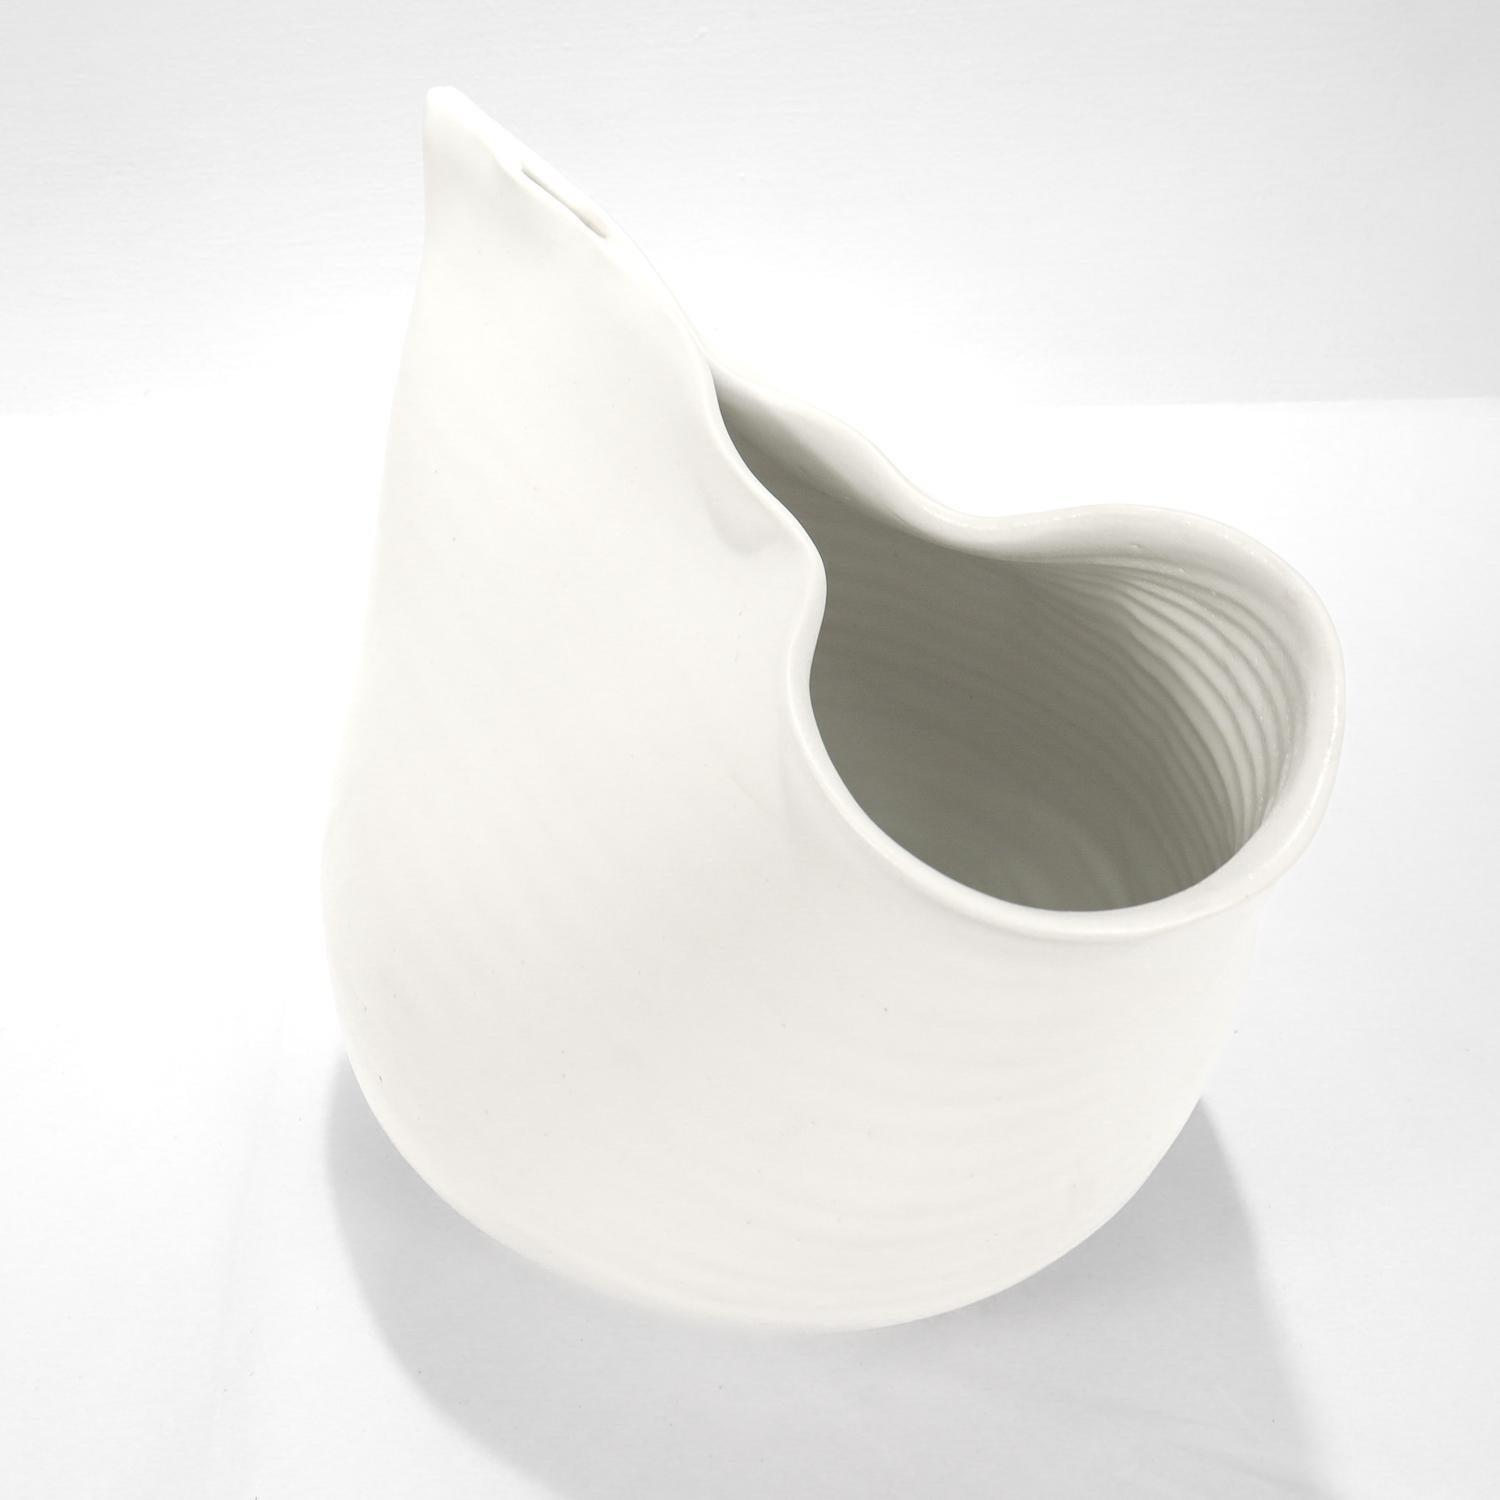 Contemporary Donna Karan Lenox Signed Limited Edition Embrace Porcelain Vase / Vessel For Sale